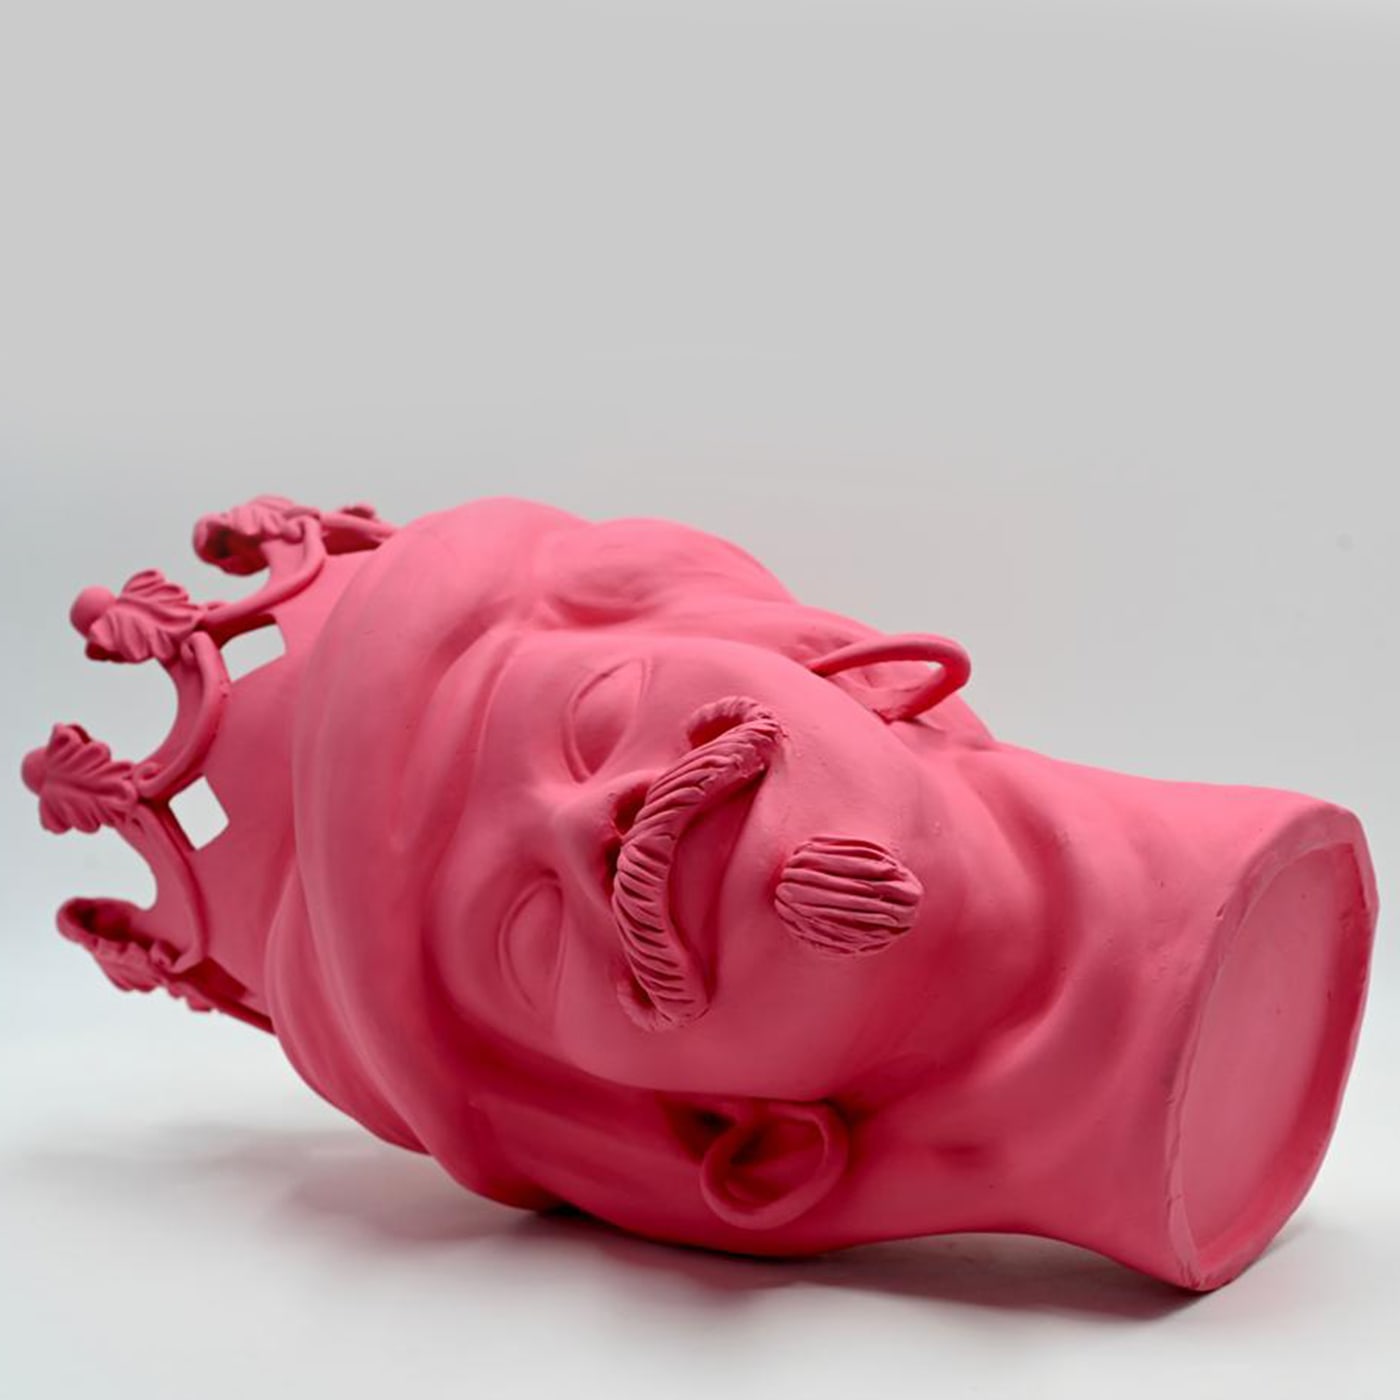 Moor's Head Pink Sculpture